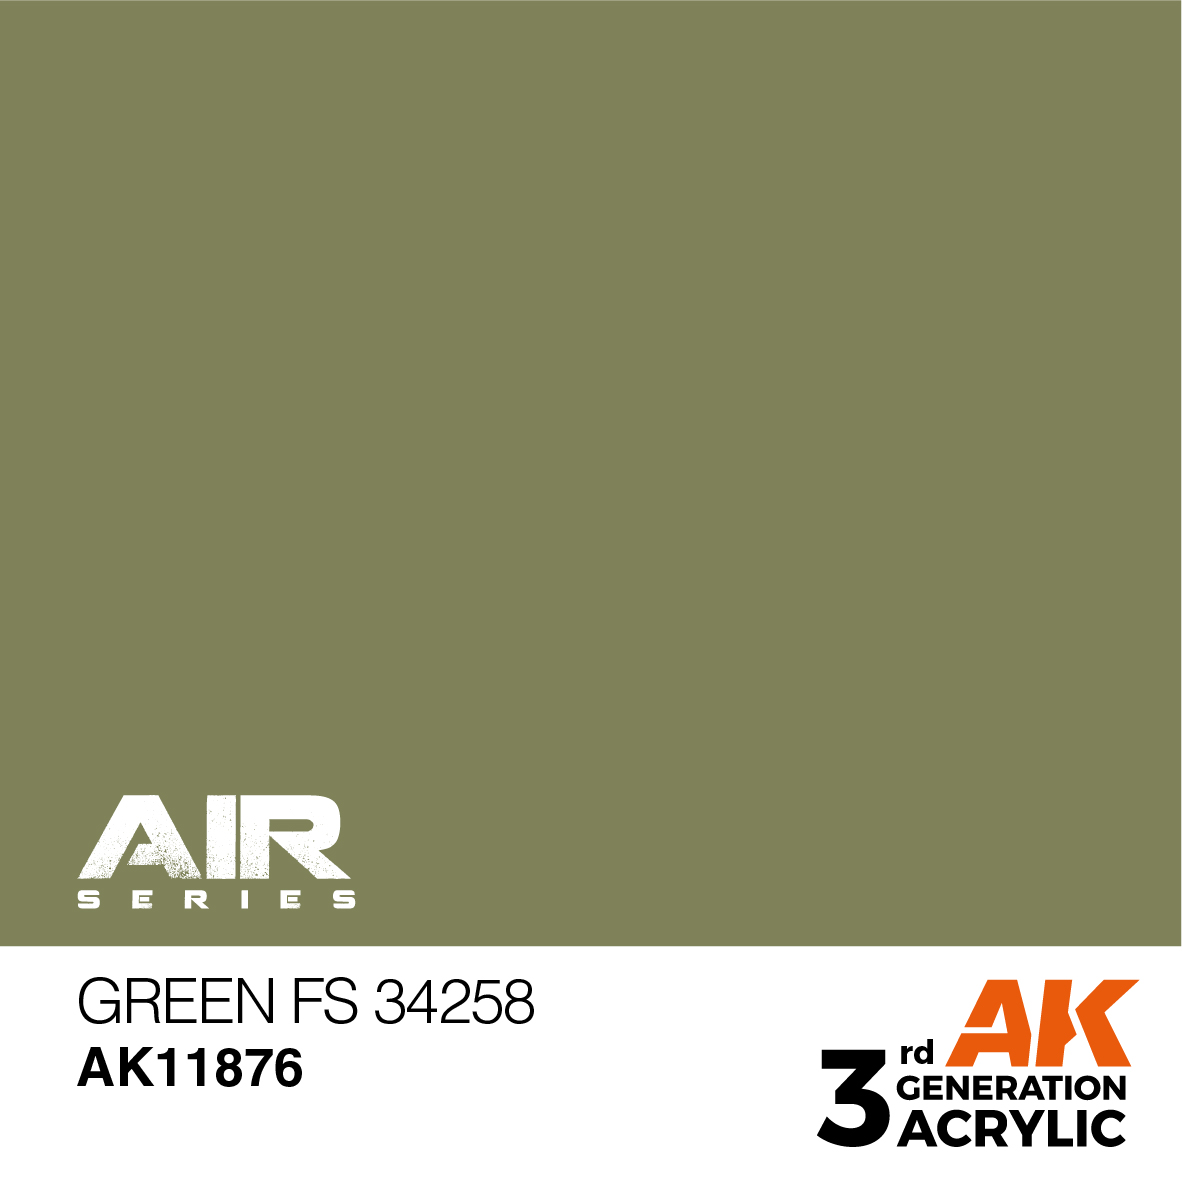 Green FS 34258 – AIR